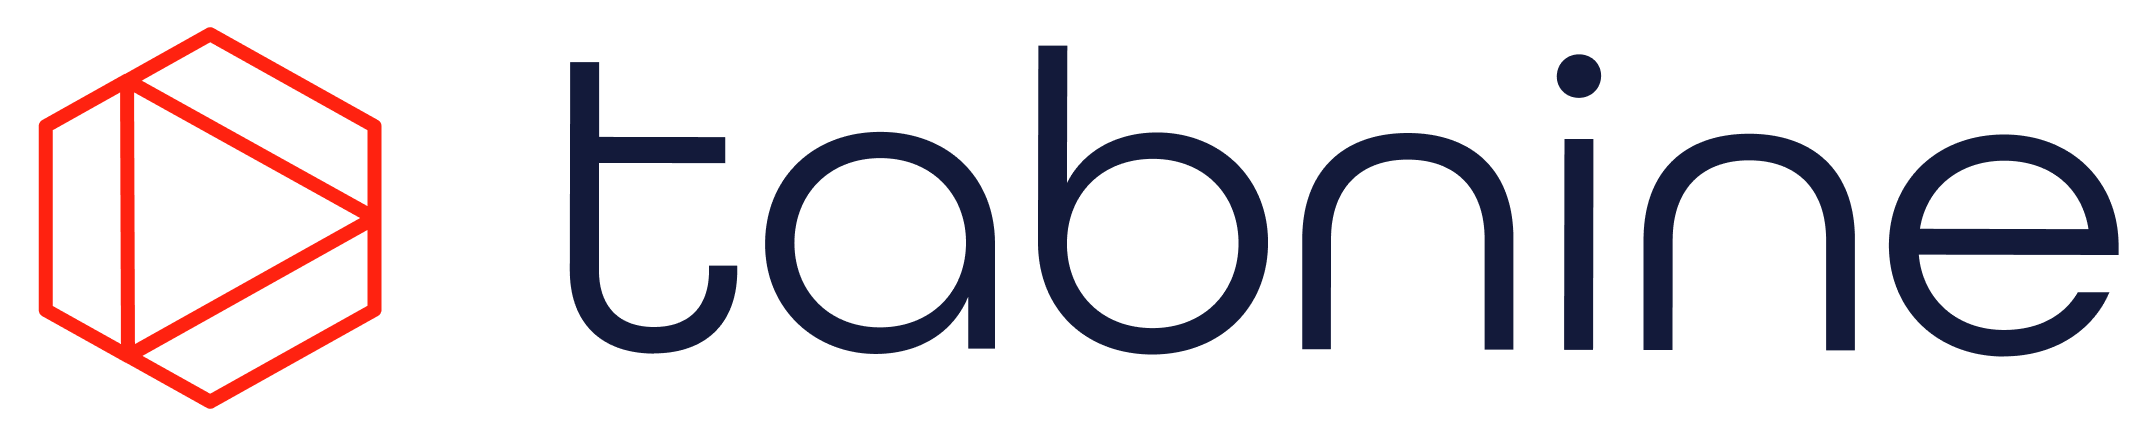 Tabnine logo.png